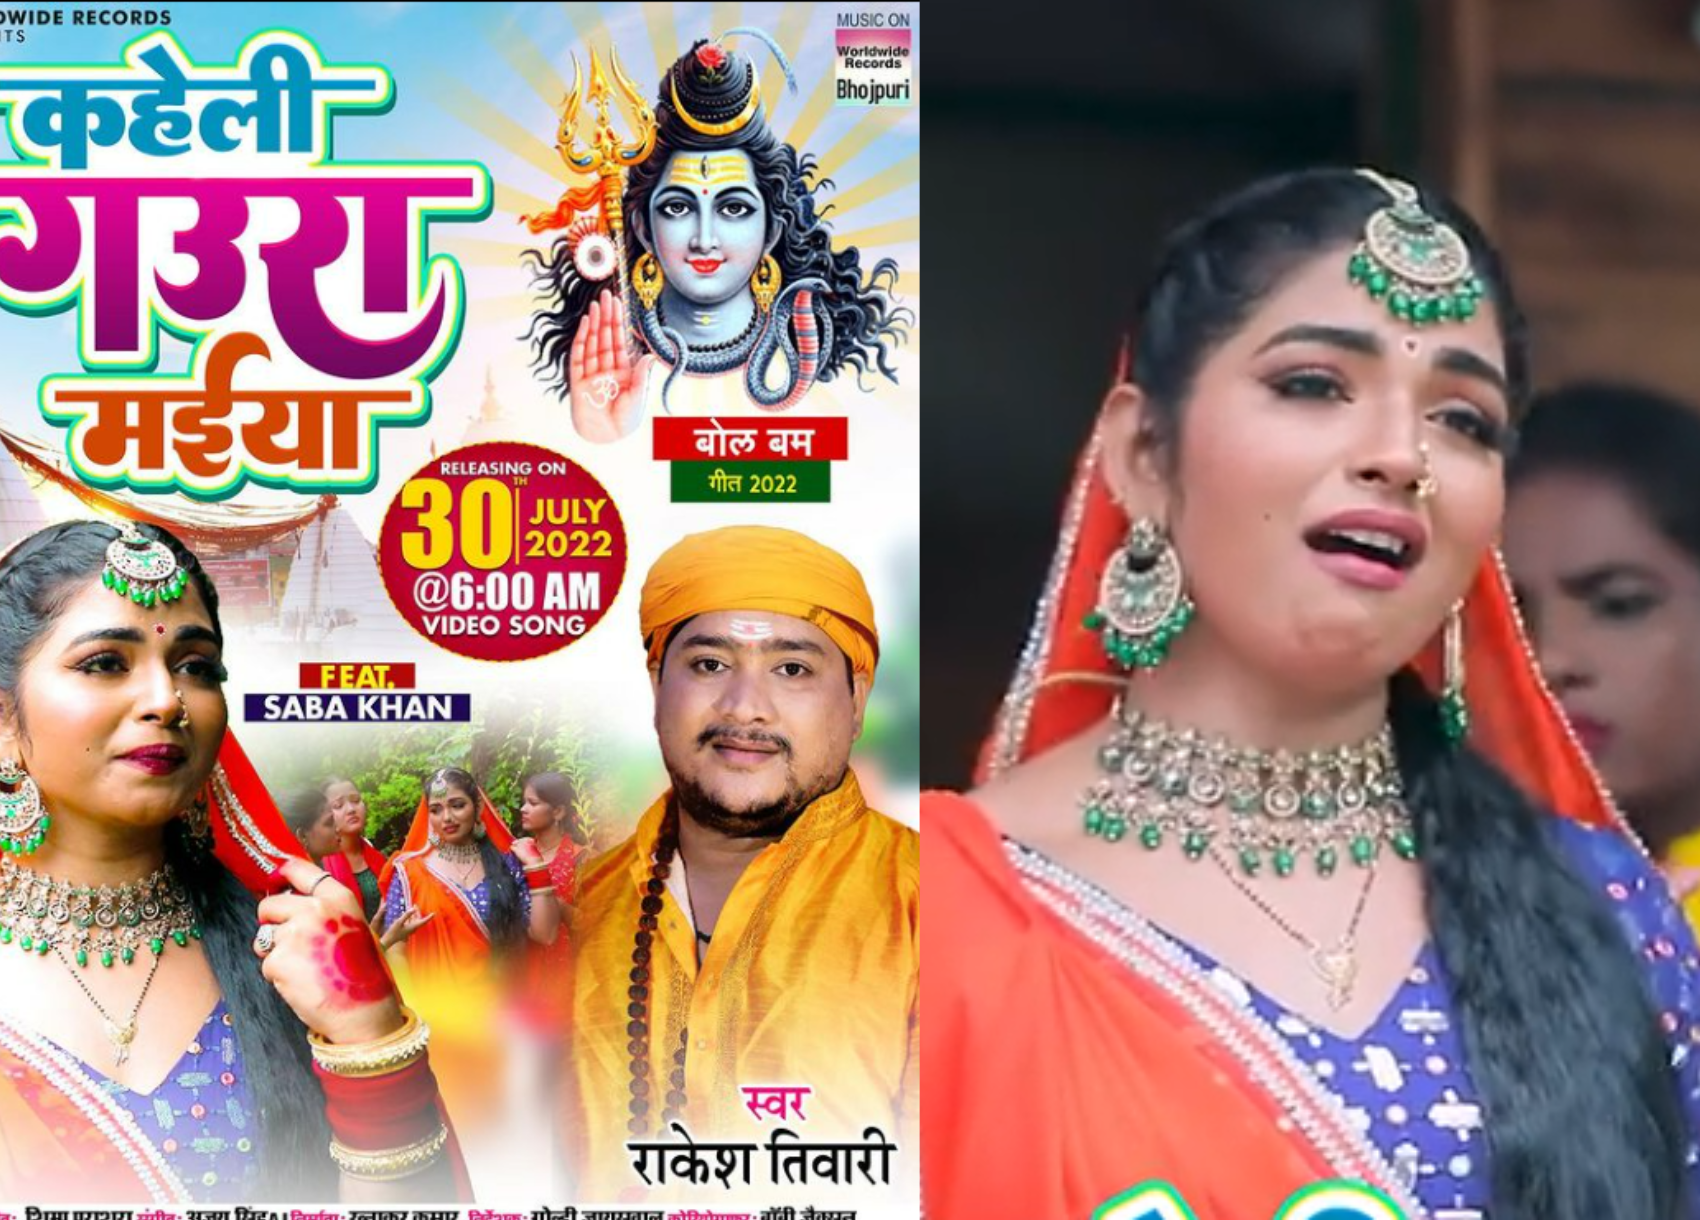 Bhojpuri : सबा खान का गाना ‘कहेली गौरा मैया’ दर्शकों को आया पसंद, इस लुक में एक्ट्रेस ने चुराया फैंस का दिल!